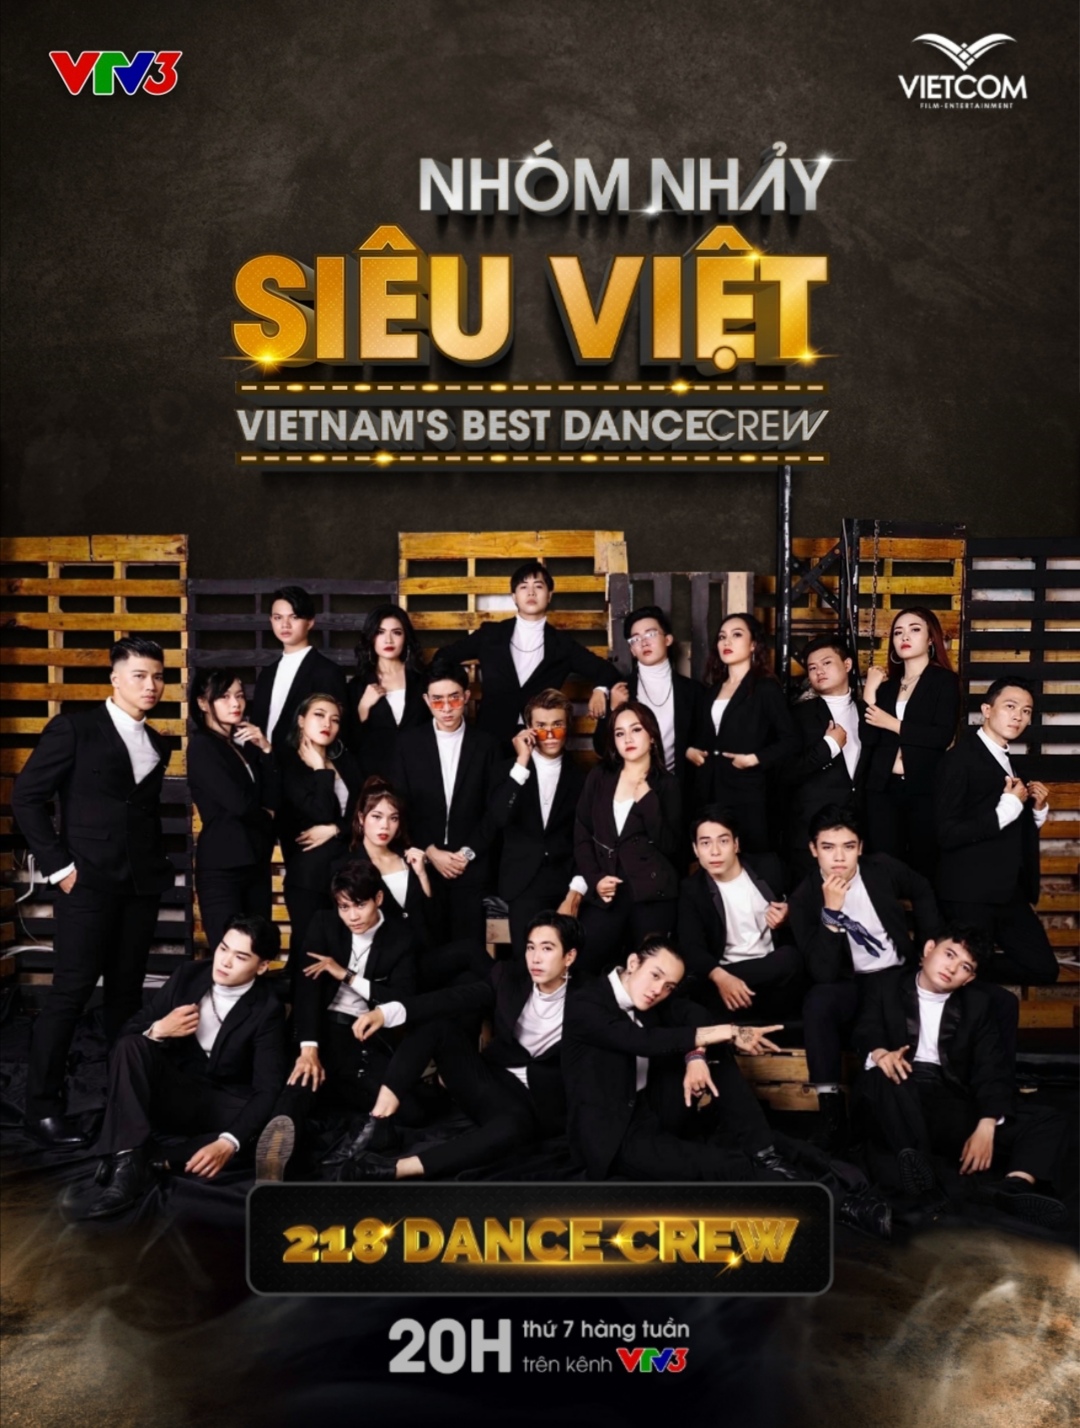 Screenshot 20210519 171844 Biên đạo Alex Tú mang nhóm nhảy đến với sân chơi Nhóm nhảy siêu Việt   Vietnam’s Best Dance Crew